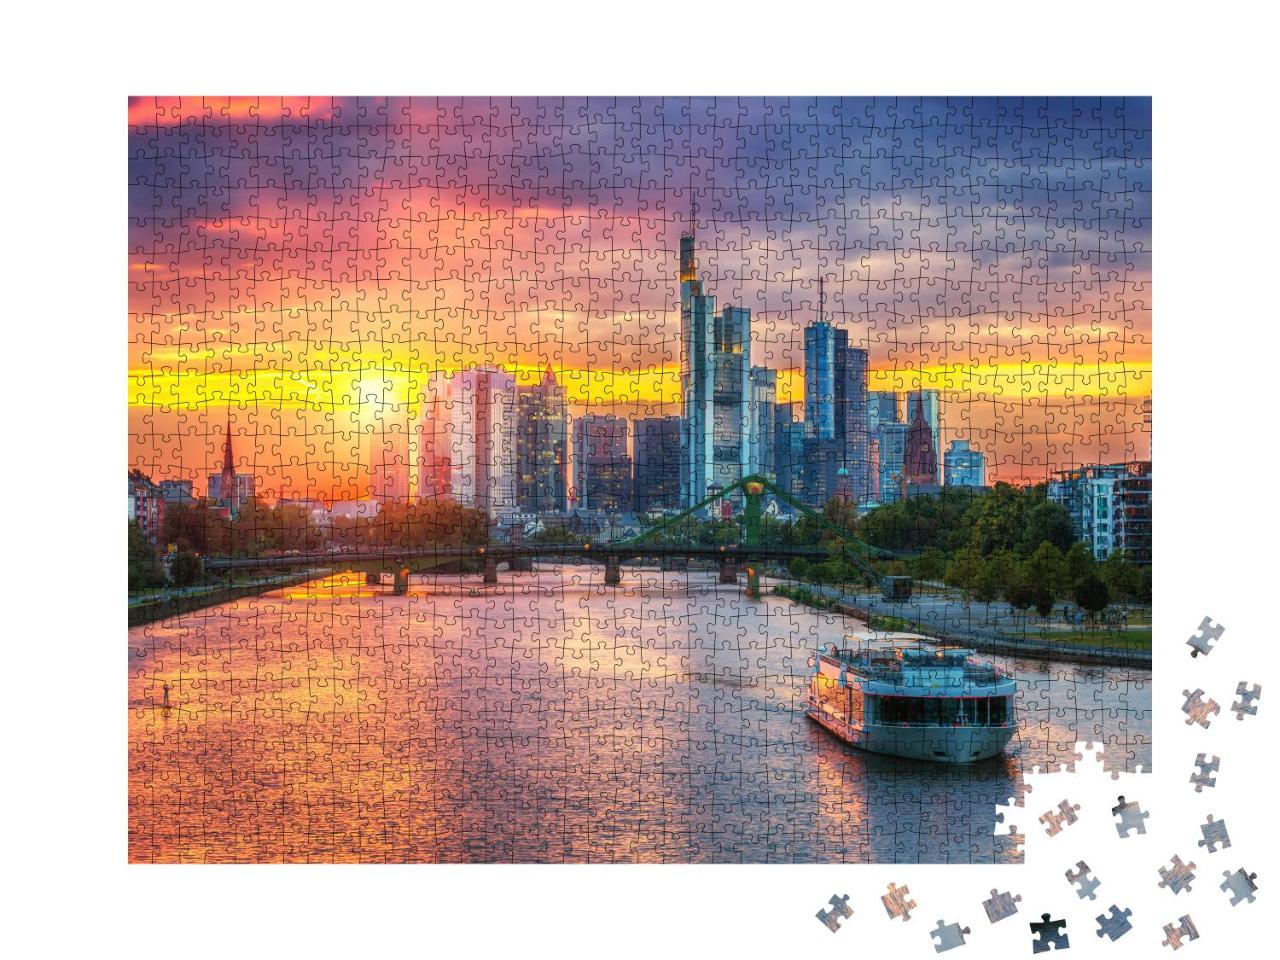 Puzzle 1000 Teile „Frankfurt am Main im Sonnenuntergang, Deutschland“